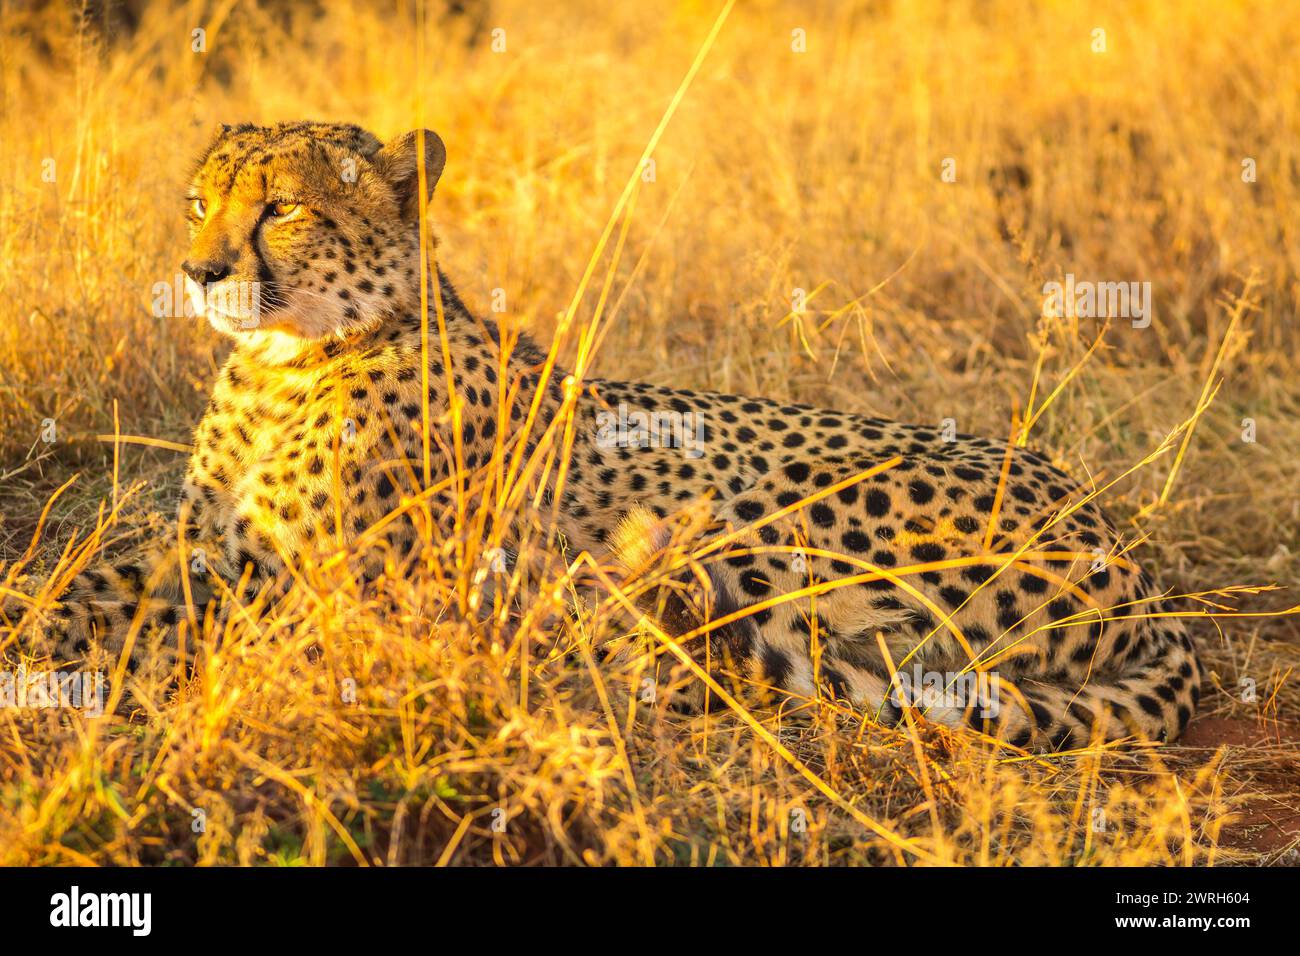 Afrikanische Gepardenart Acinonyx jubatus, Familie der Feliden, liegt in der Savanne, Südafrika. Der Gepard ist das schnellste Landtier der Welt. Stockfoto